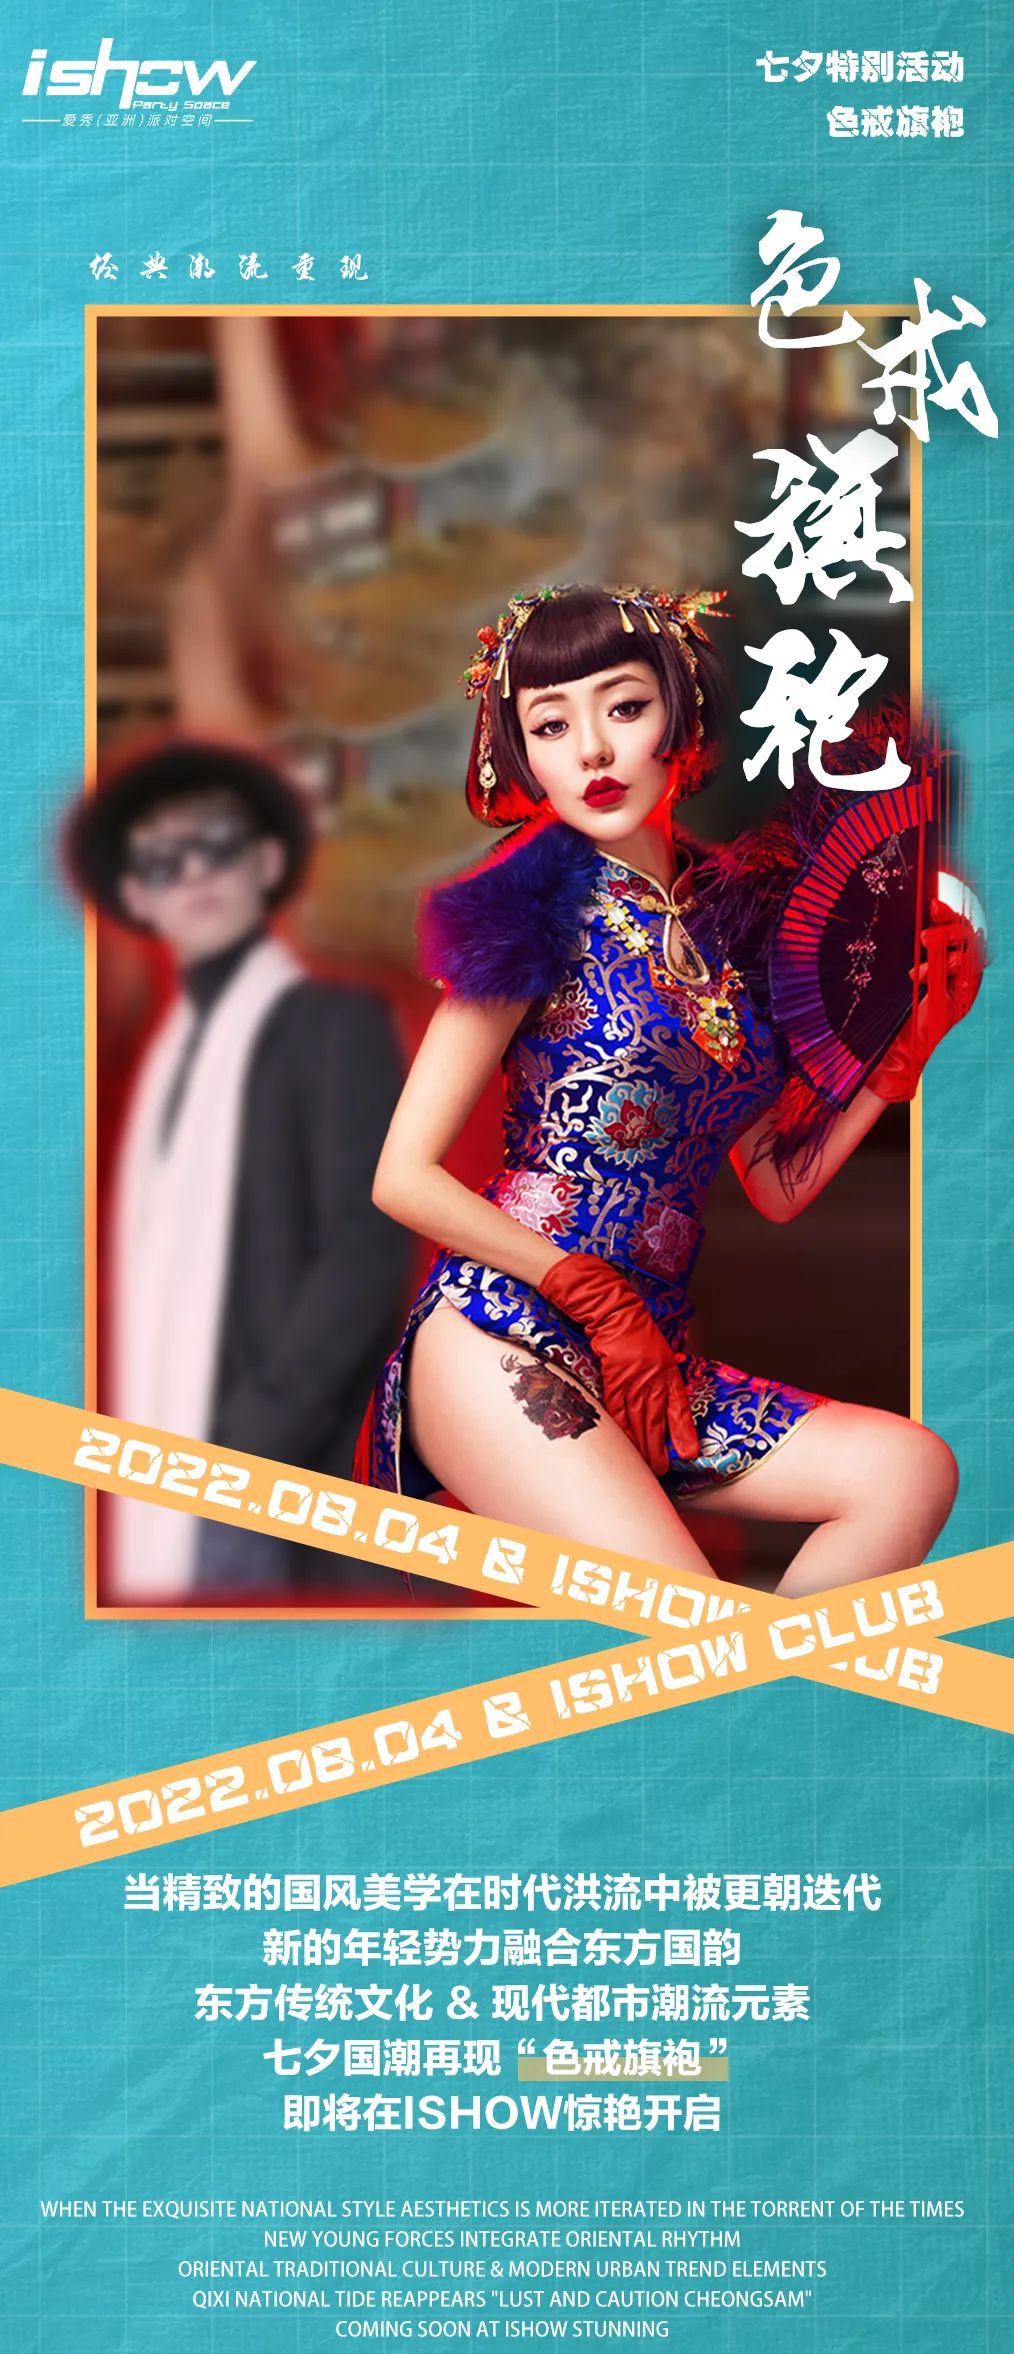 ISHOW CLUB丨七夕限定“色戒旗袍”——中国式魅力-嘉兴爱秀酒吧/I SHOW CLUB